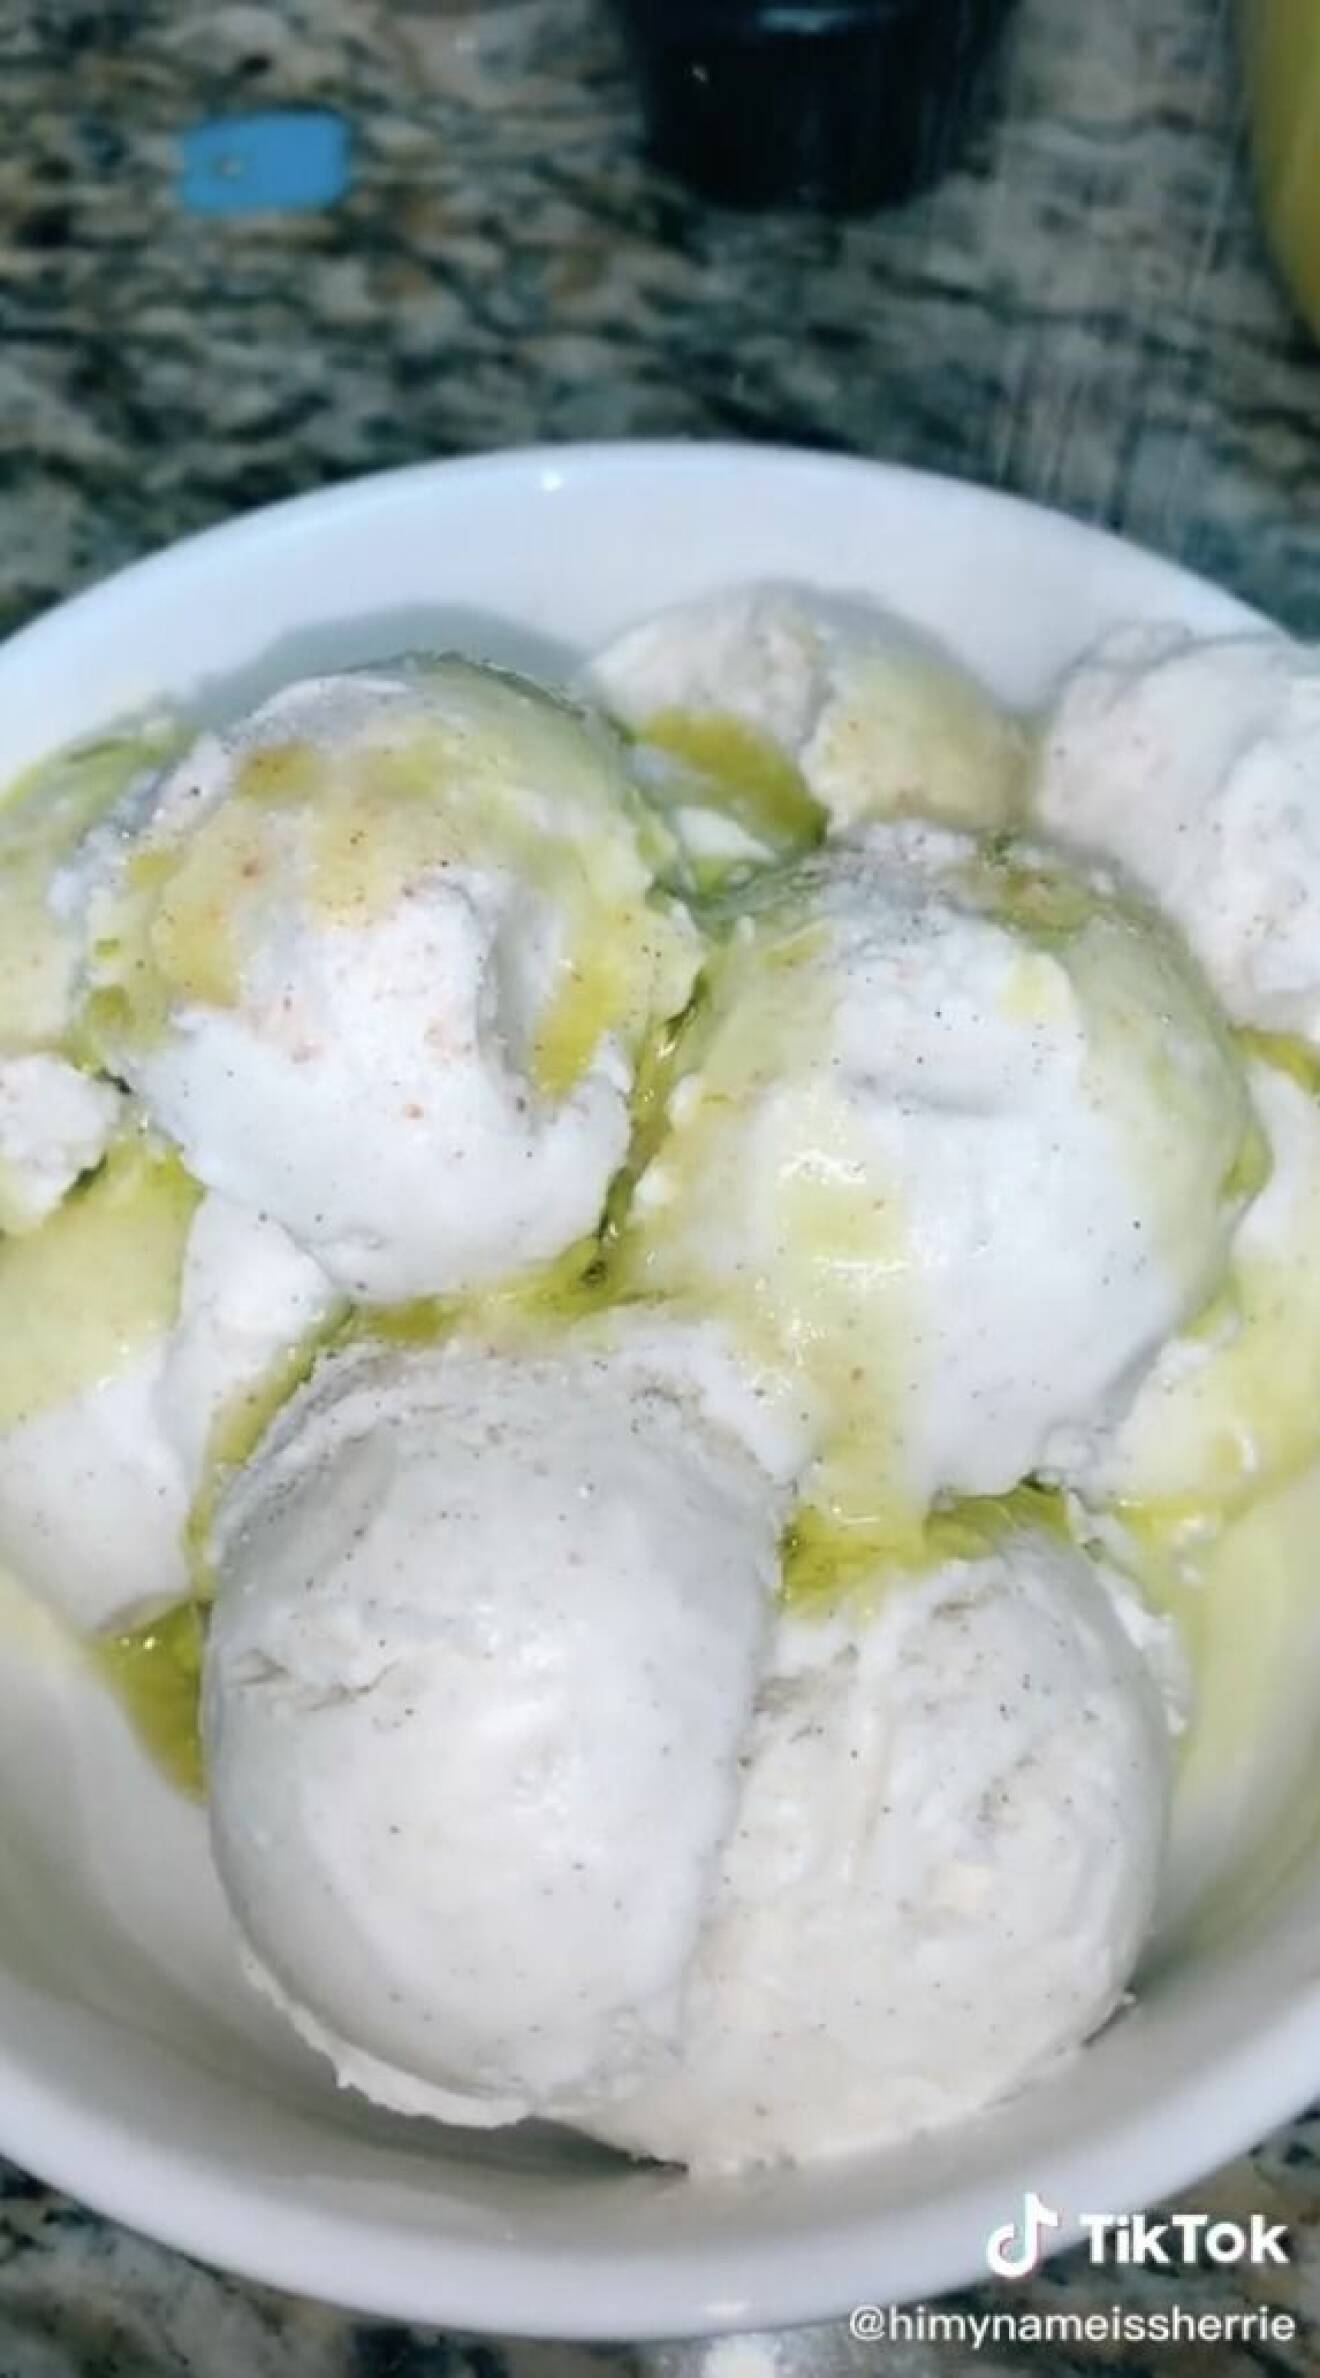 Vaniljglass med olivolja och salt i en video på Tiktok